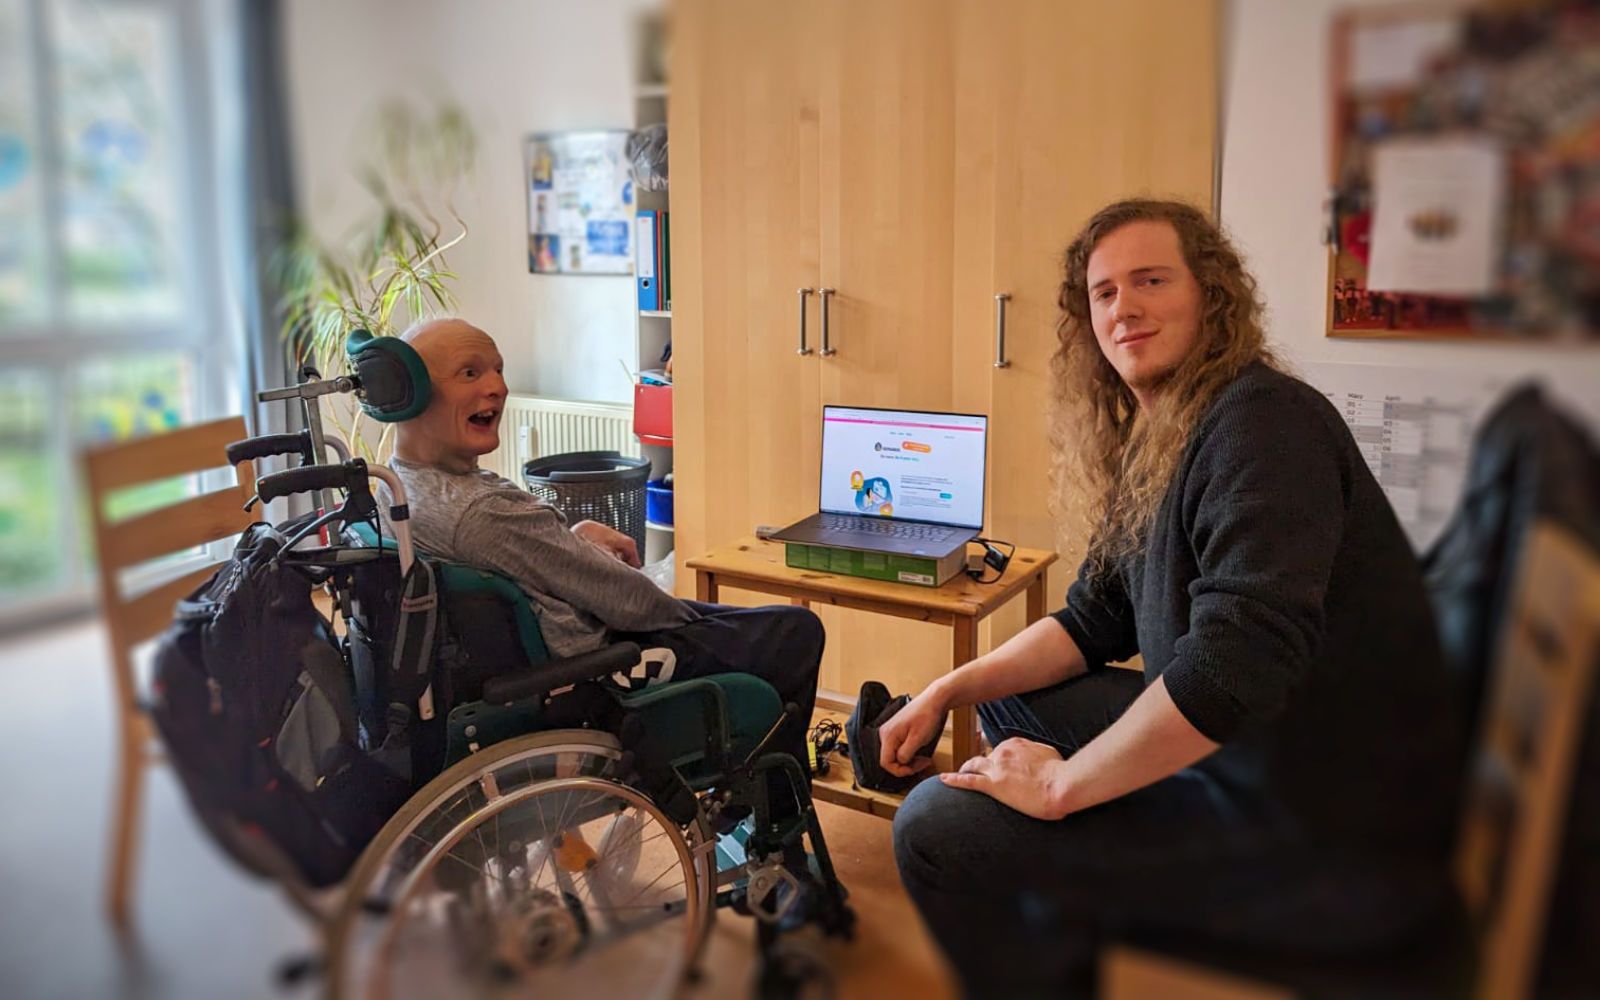 Links sitzt ein Proband im Rollstuhl, rechts sitzt Lukas auf einem Stuhl, in der Mitte ein Laptop mit Semanux.